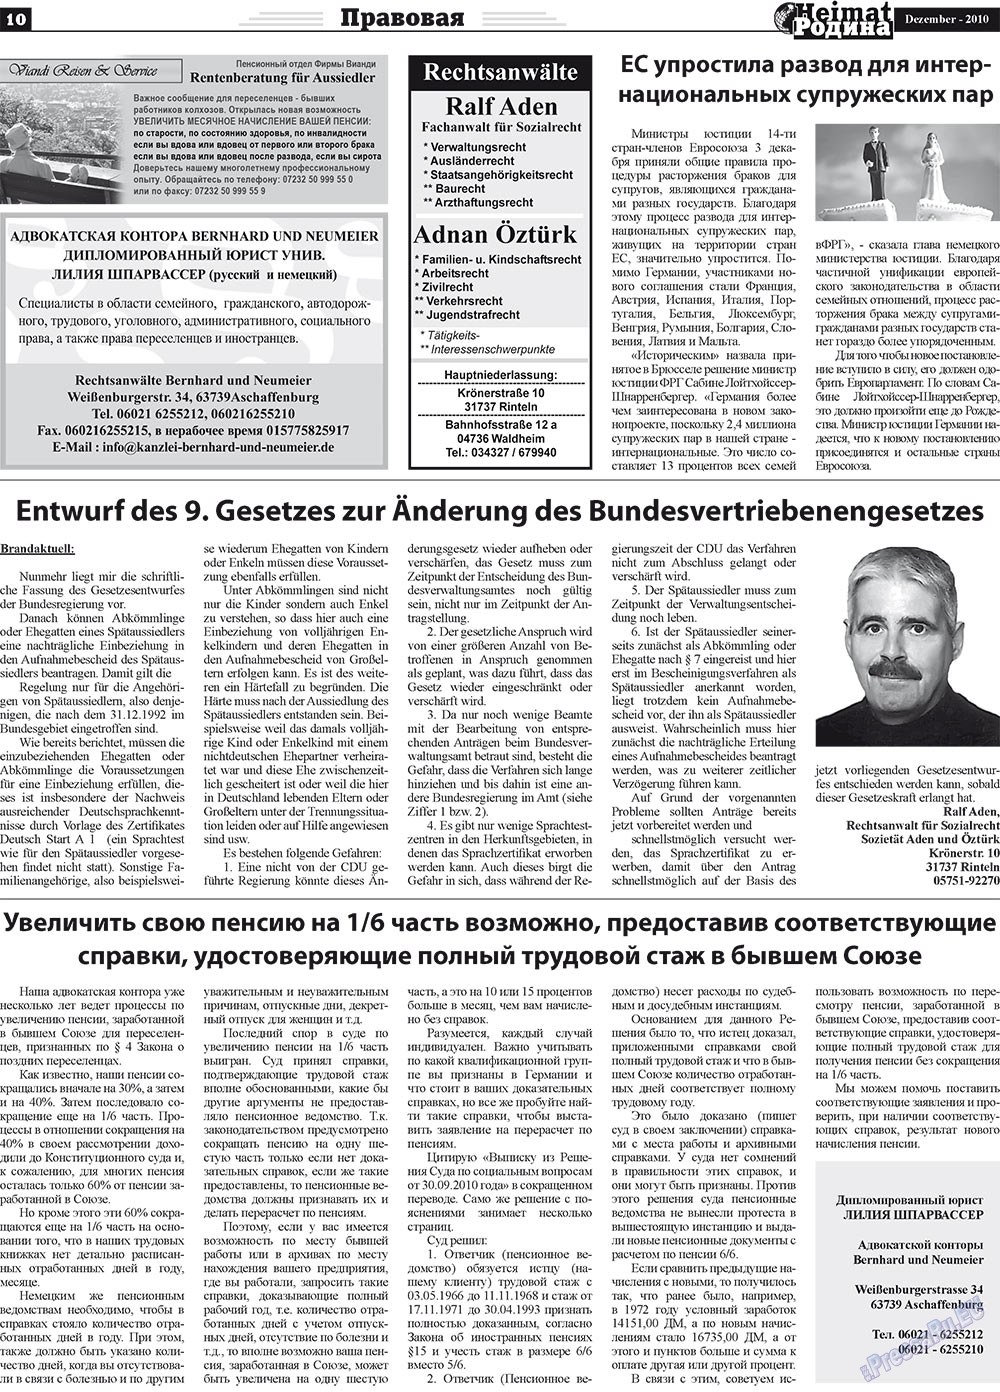 Heimat-Родина (газета). 2010 год, номер 12, стр. 10